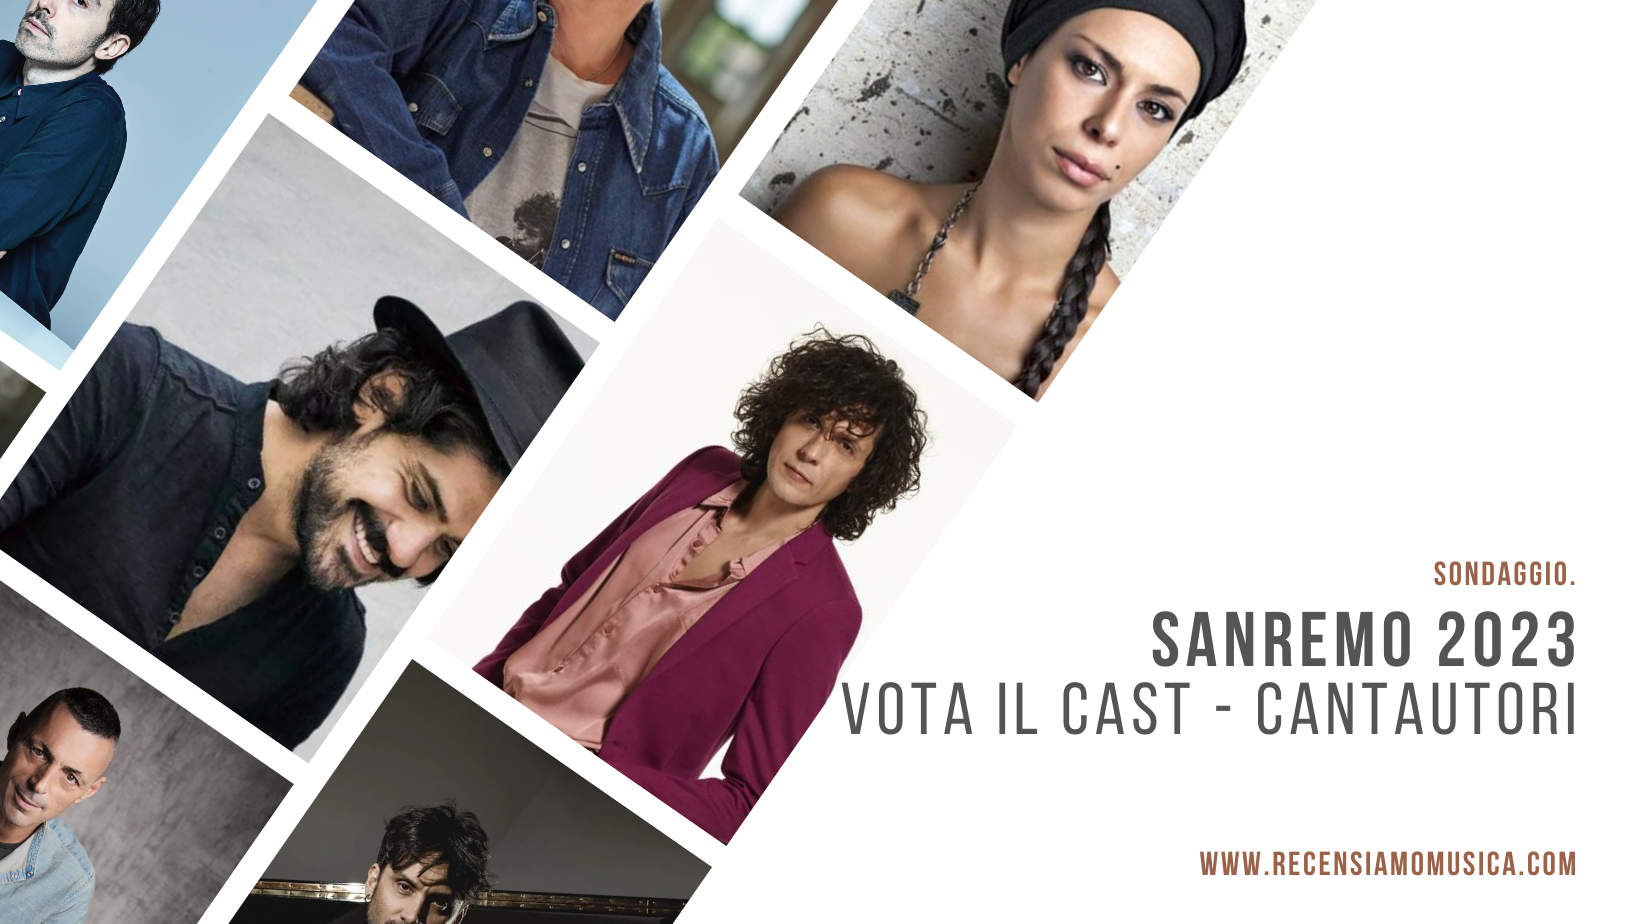 Sanremo 2023 - Cantautori sondaggio